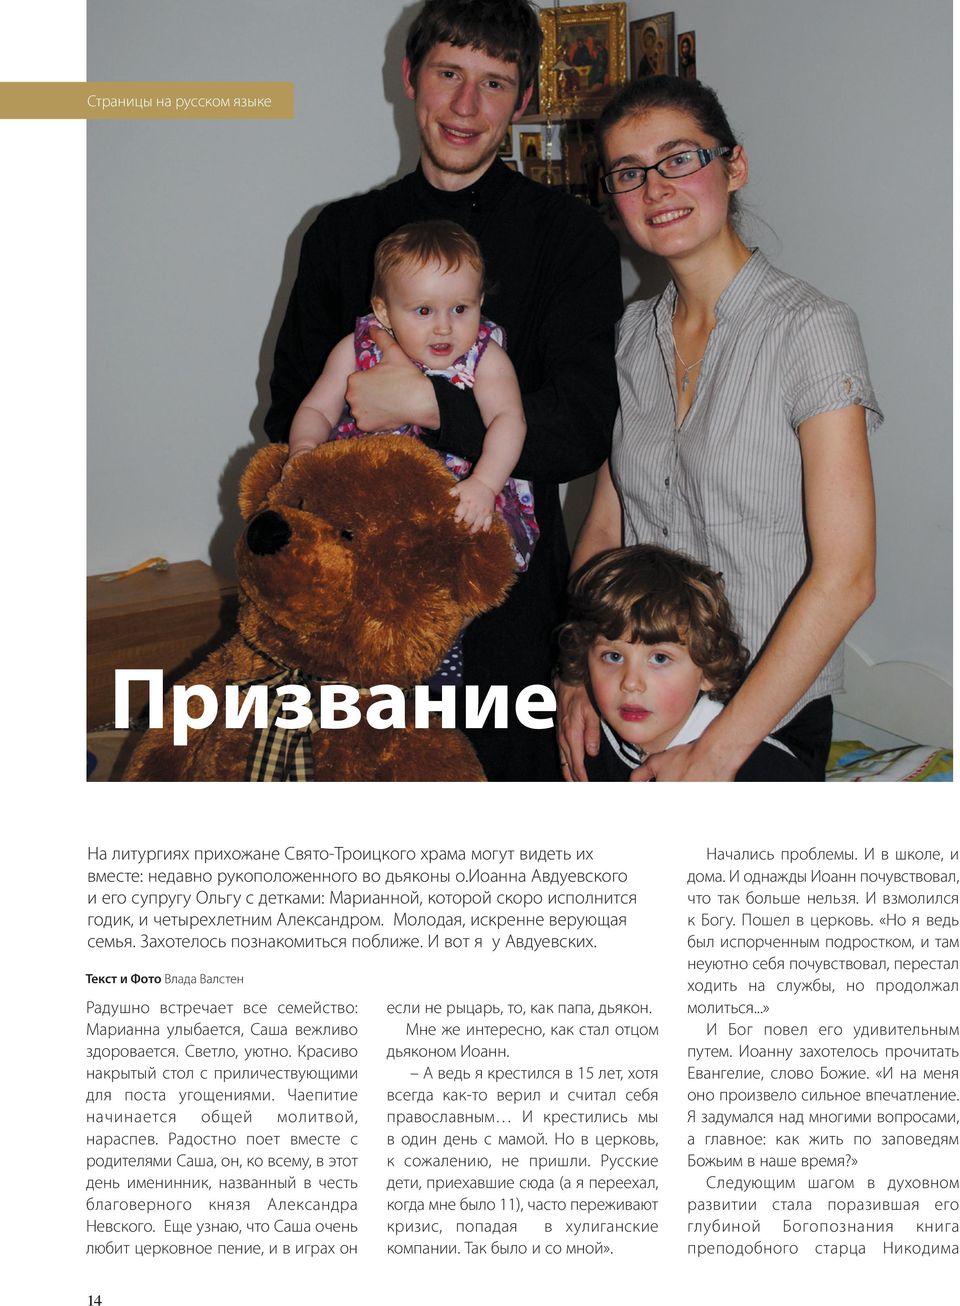 И вот я у Авдуевских. Текст и Фото Влада Валстен Радушно встречает все семейство: Марианна улыбается, Саша вежливо здоровается. Светло, уютно.